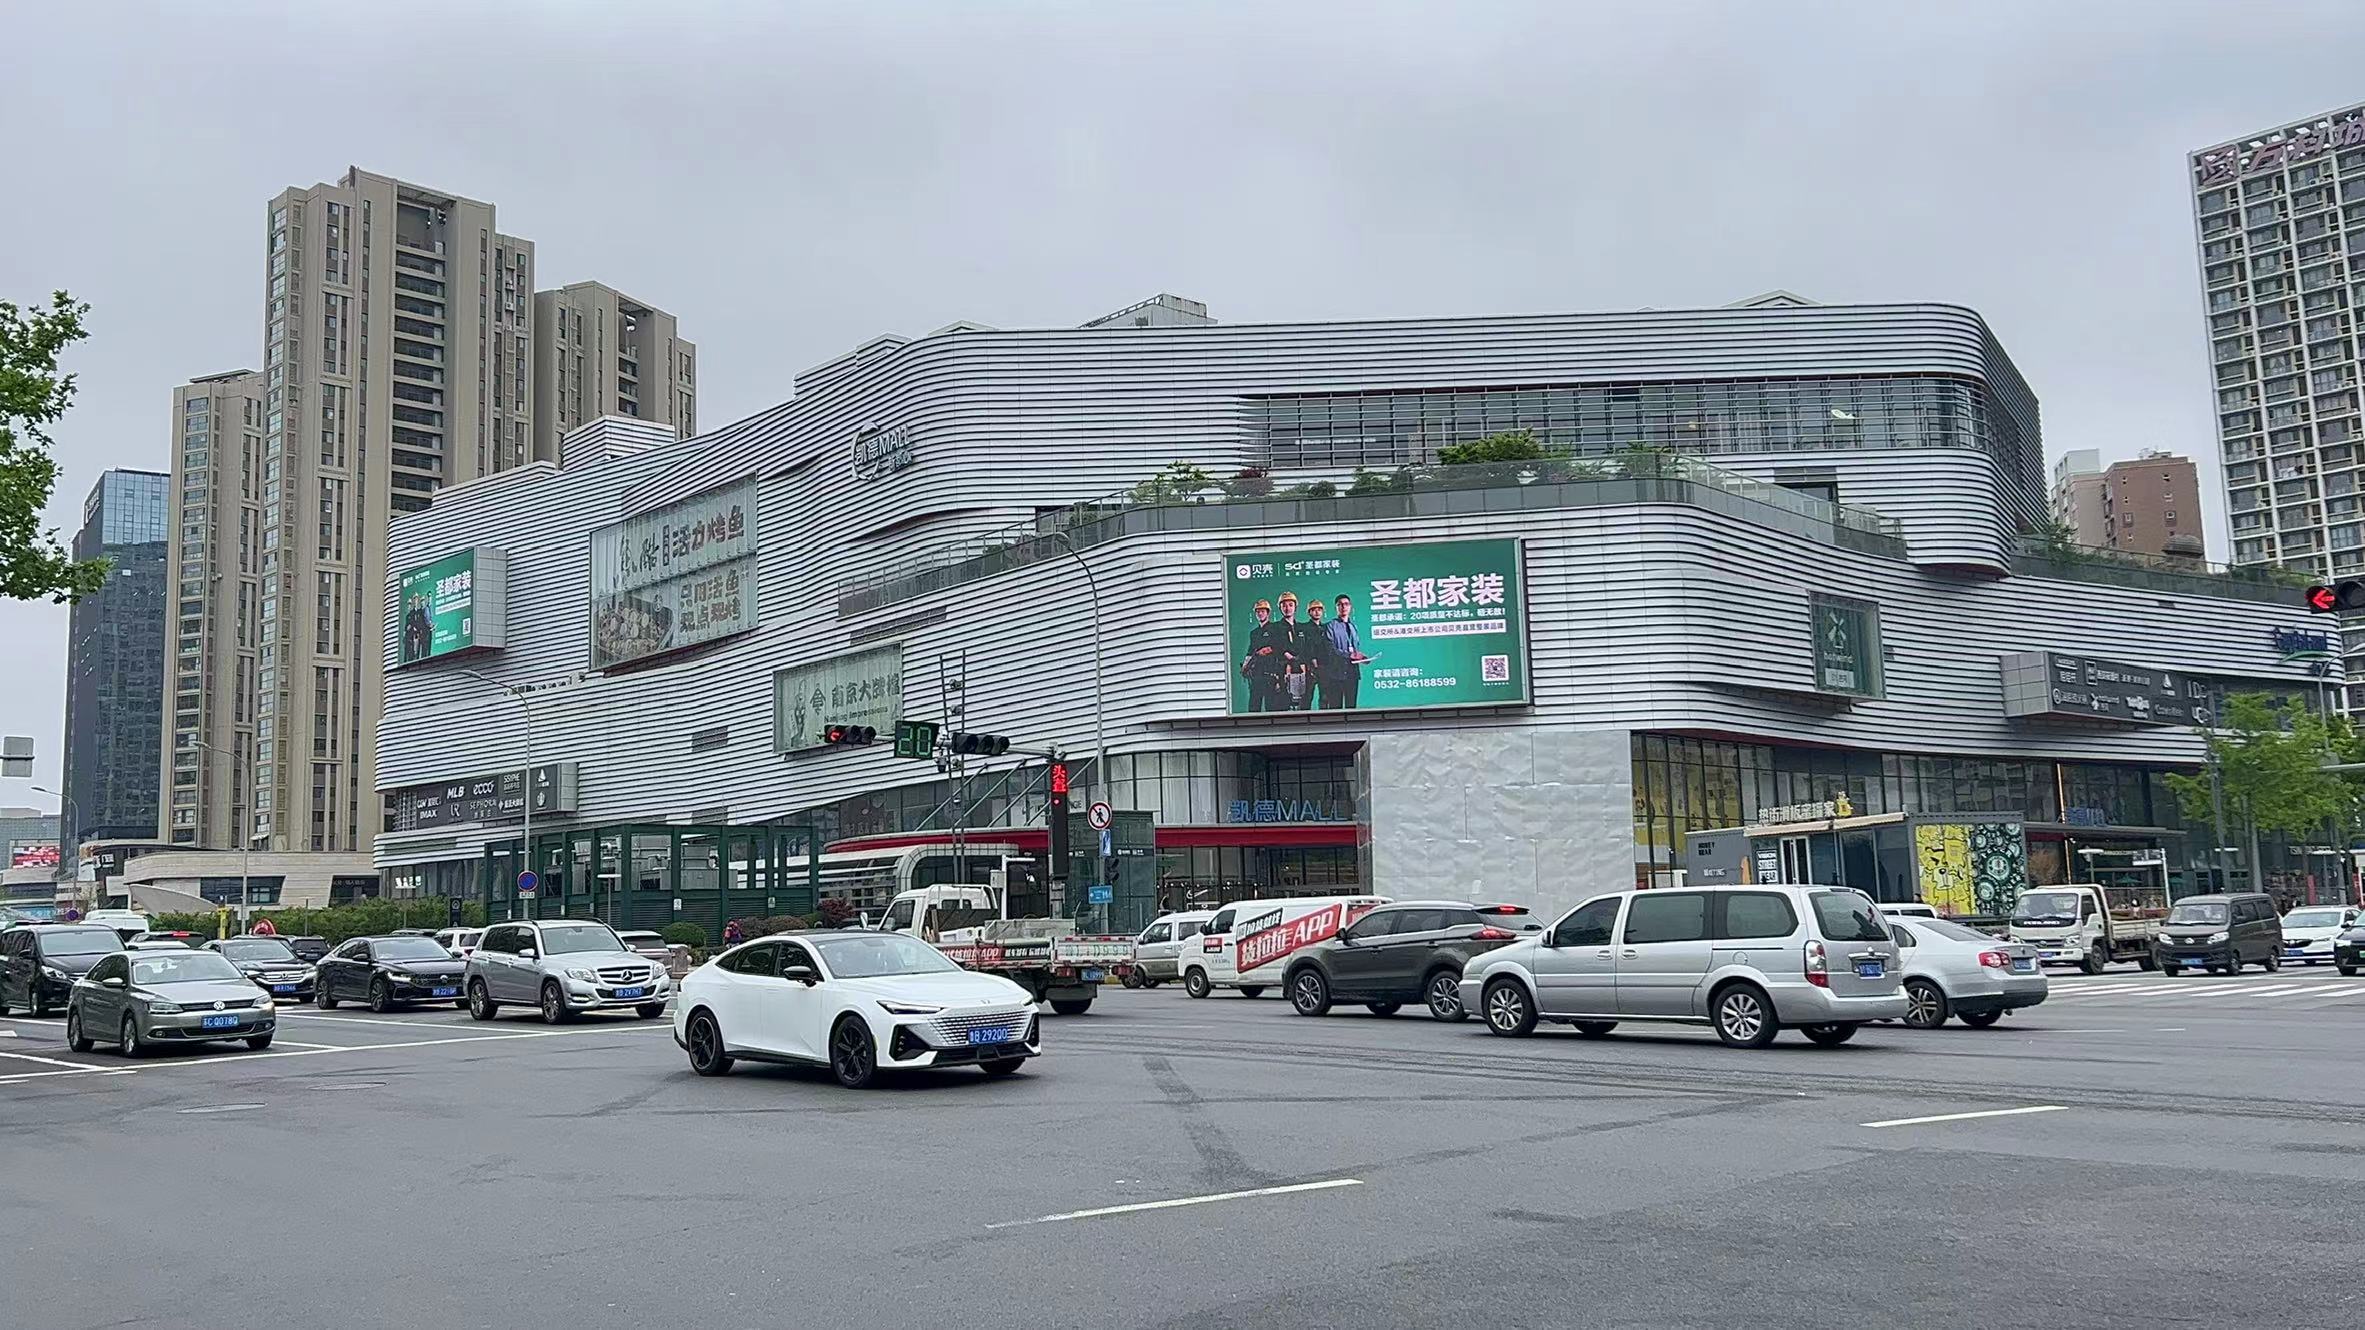 山东青岛家乐福凯德mall等地标建筑媒体LED屏